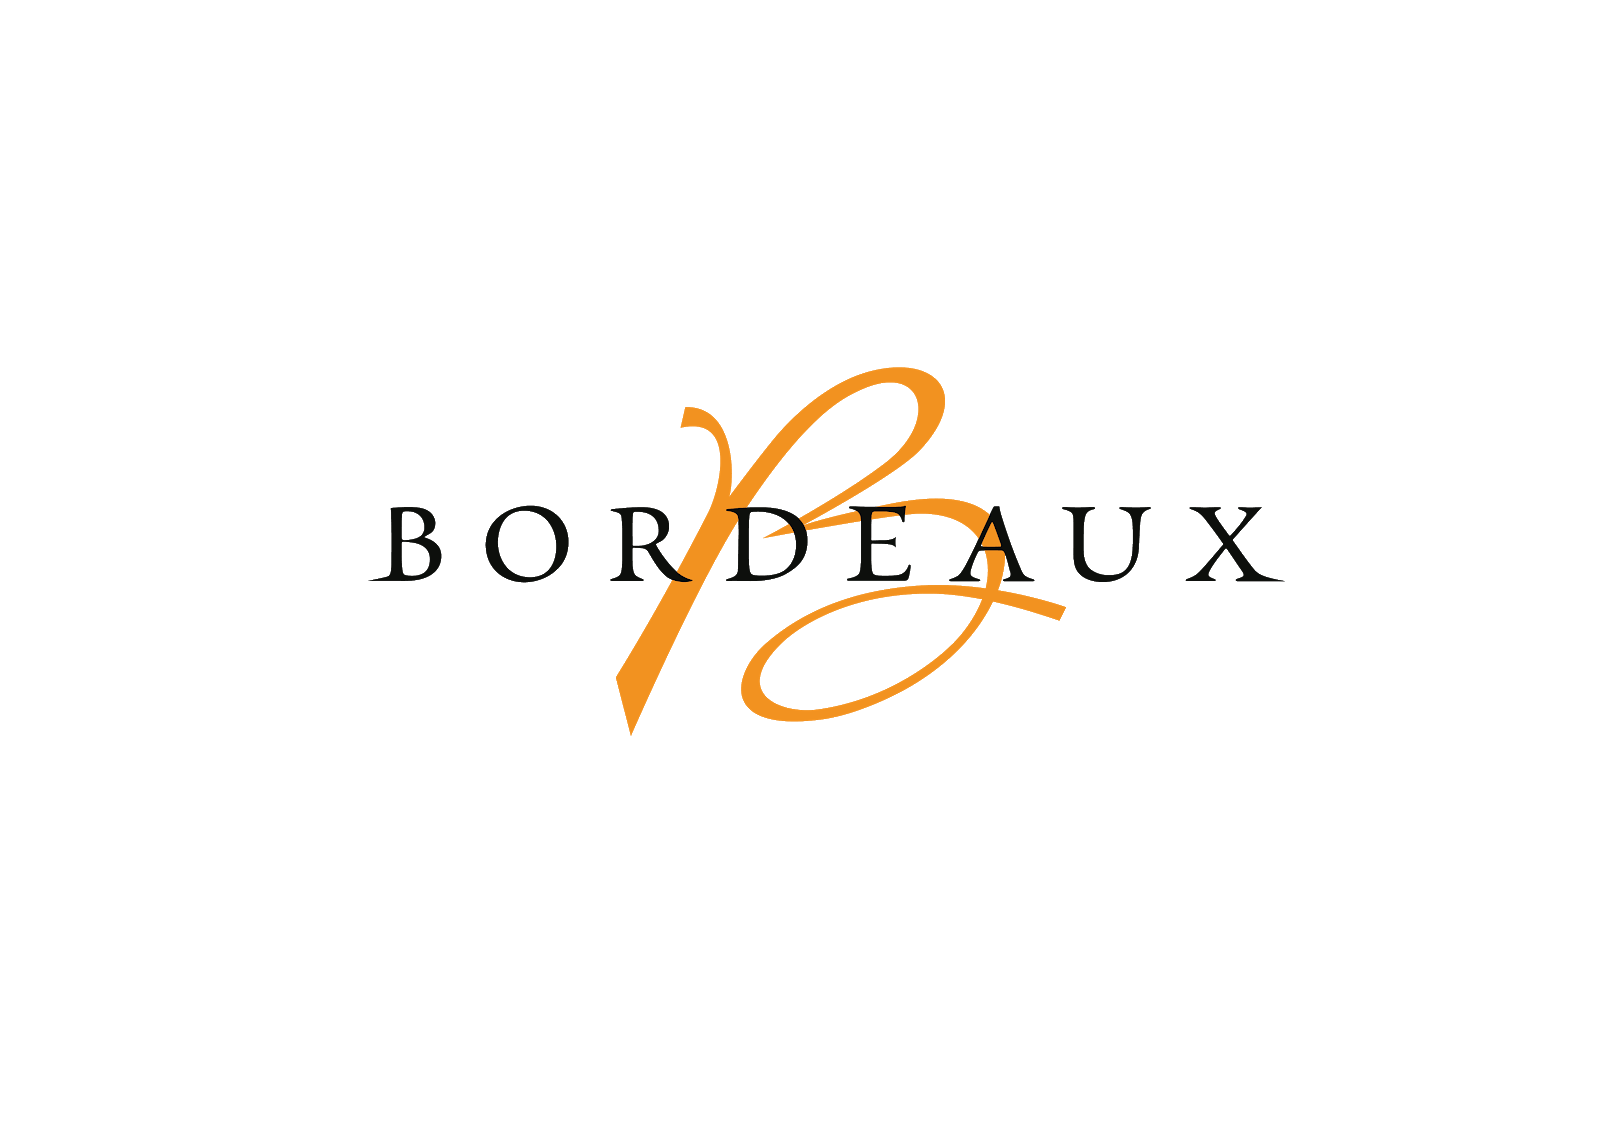 Bordeau Logo - THE BORDEAUX BRIEFING | Official website Bordeaux.com